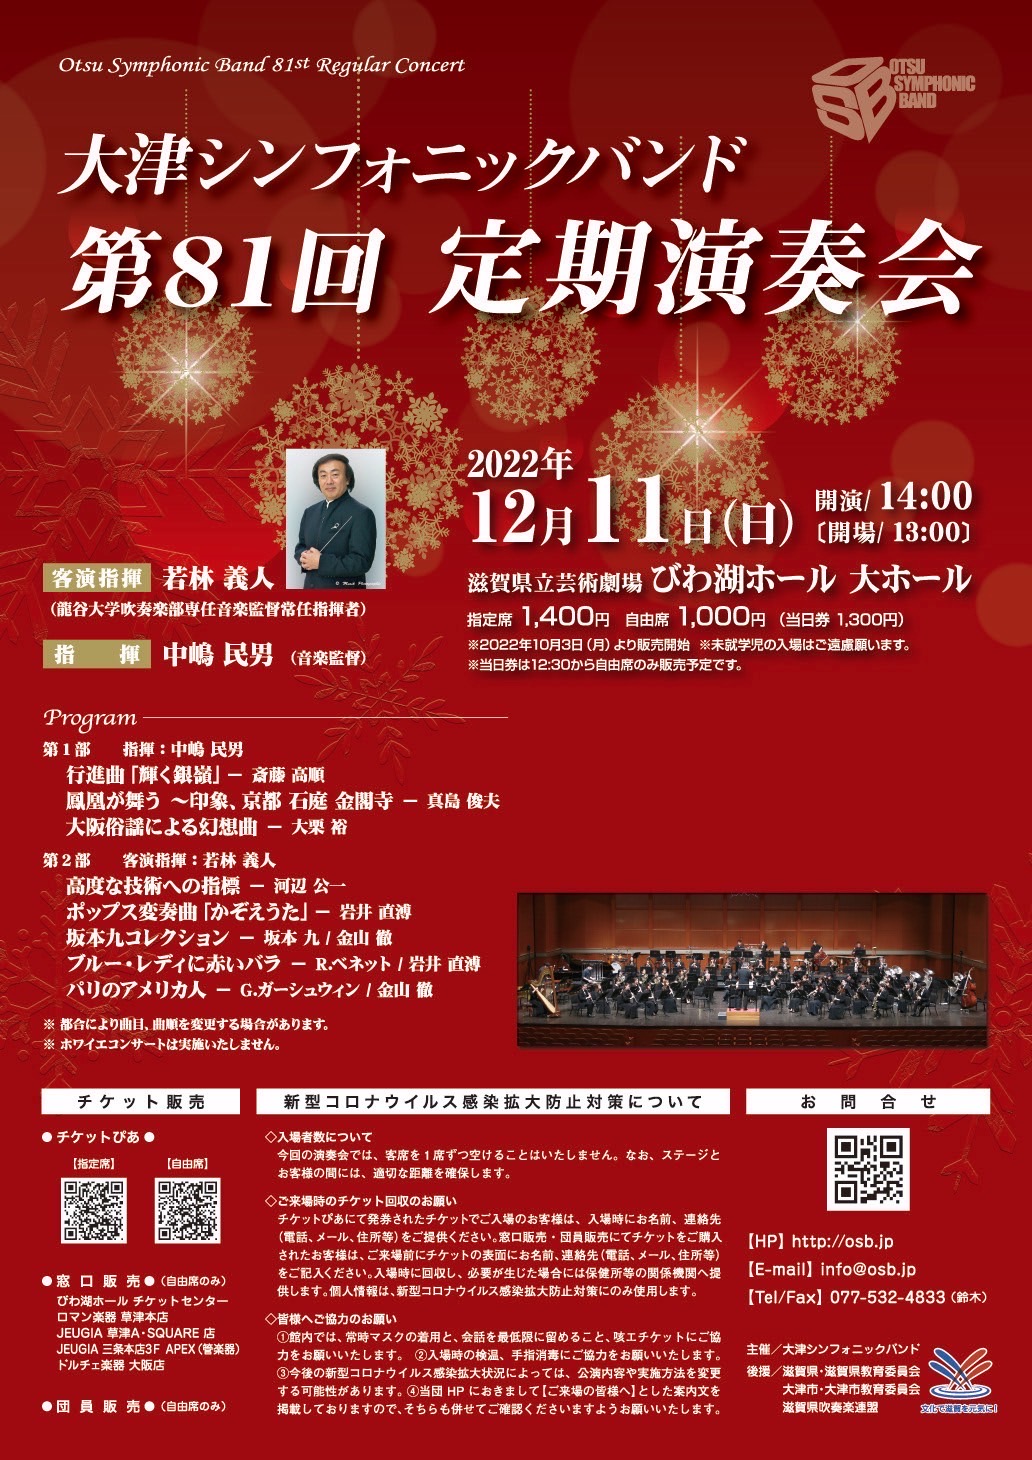 2022年12月11日大津シンフォニックバンド 第81回定期演奏会